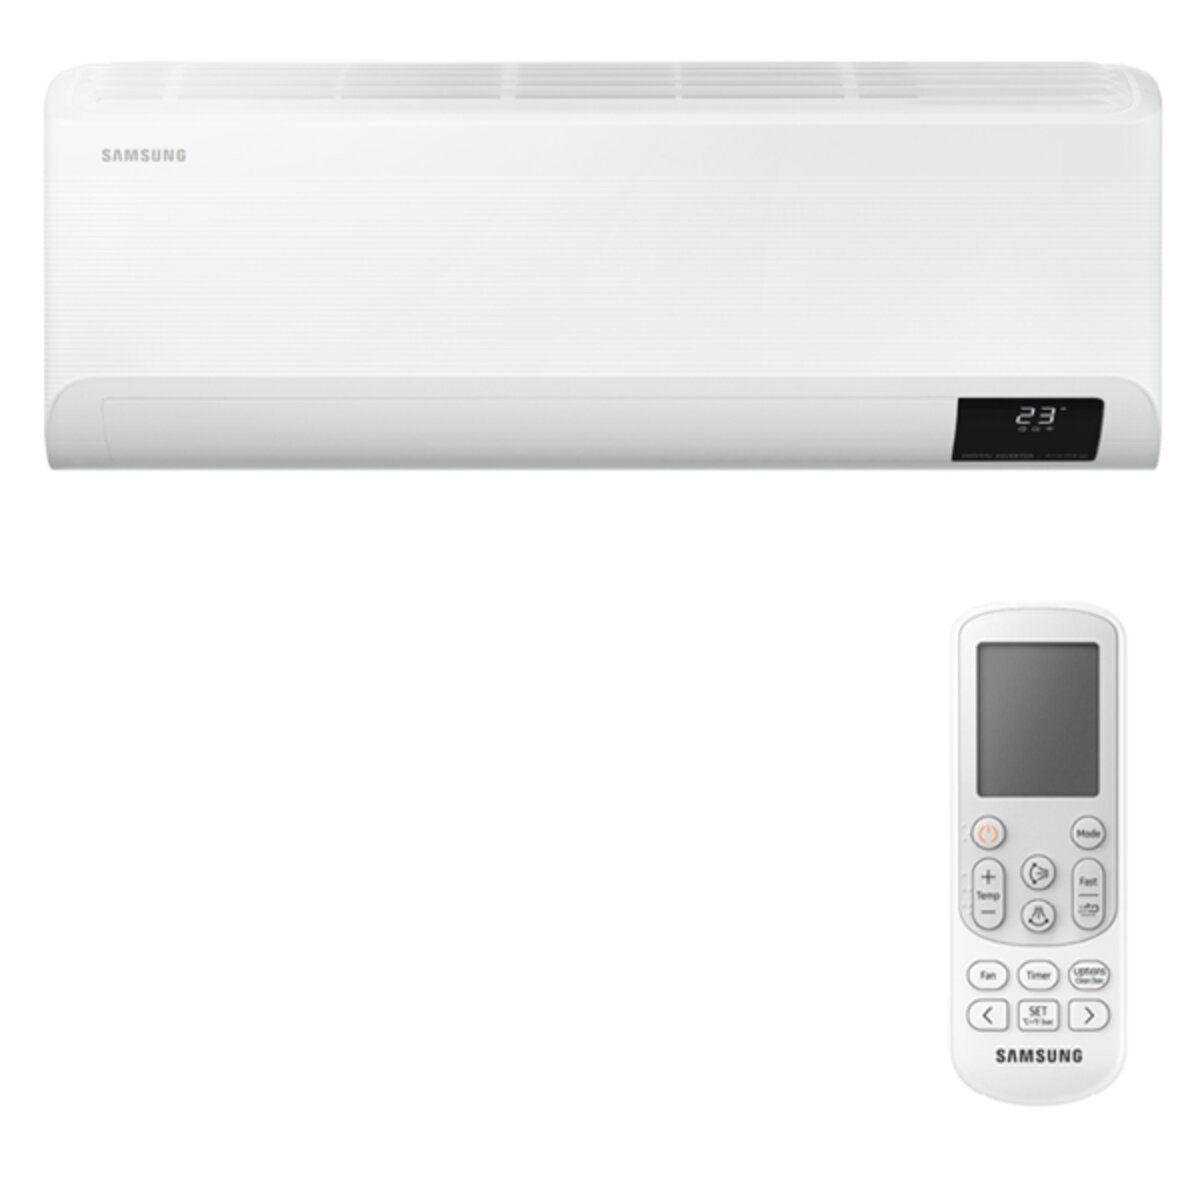 Samsung Cebu WLAN Klimaanlage Penta Split 7000 + 7000 + 12000 + 12000 + 12000 BTU Wechselrichter A++ WLAN Außengerät 10,0 kW